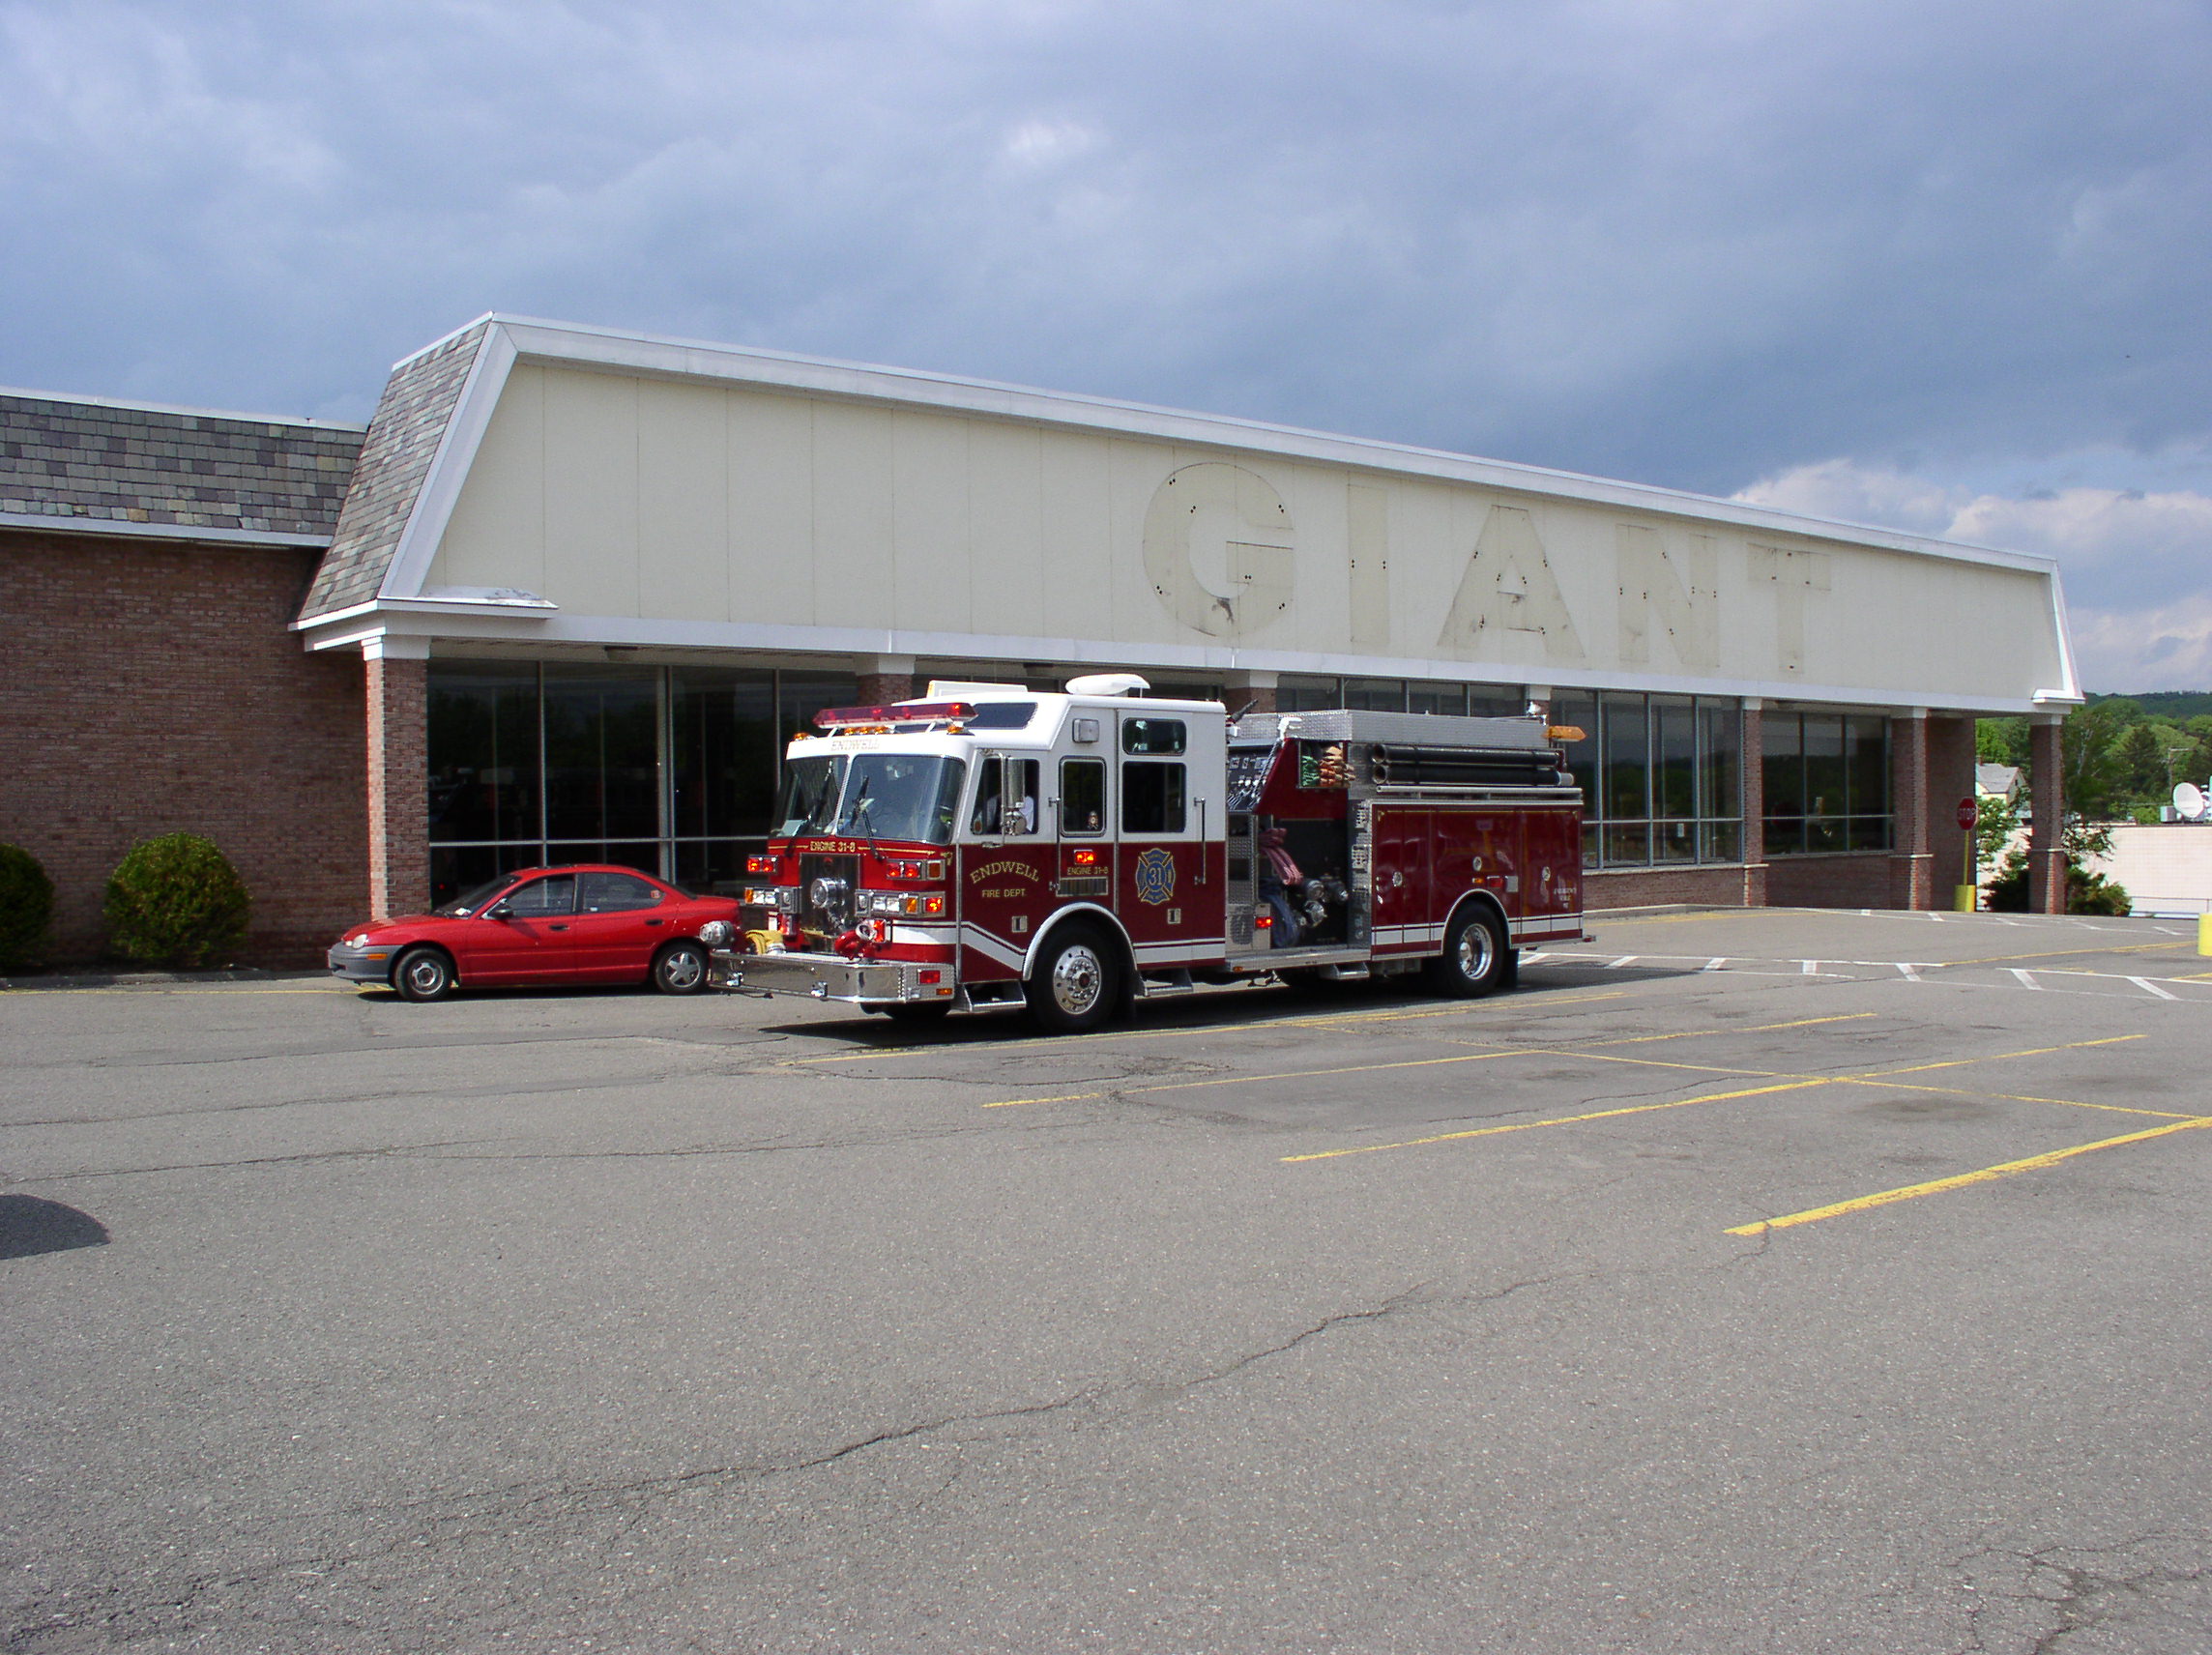 05-30-03  Response - Fire - Car Fire